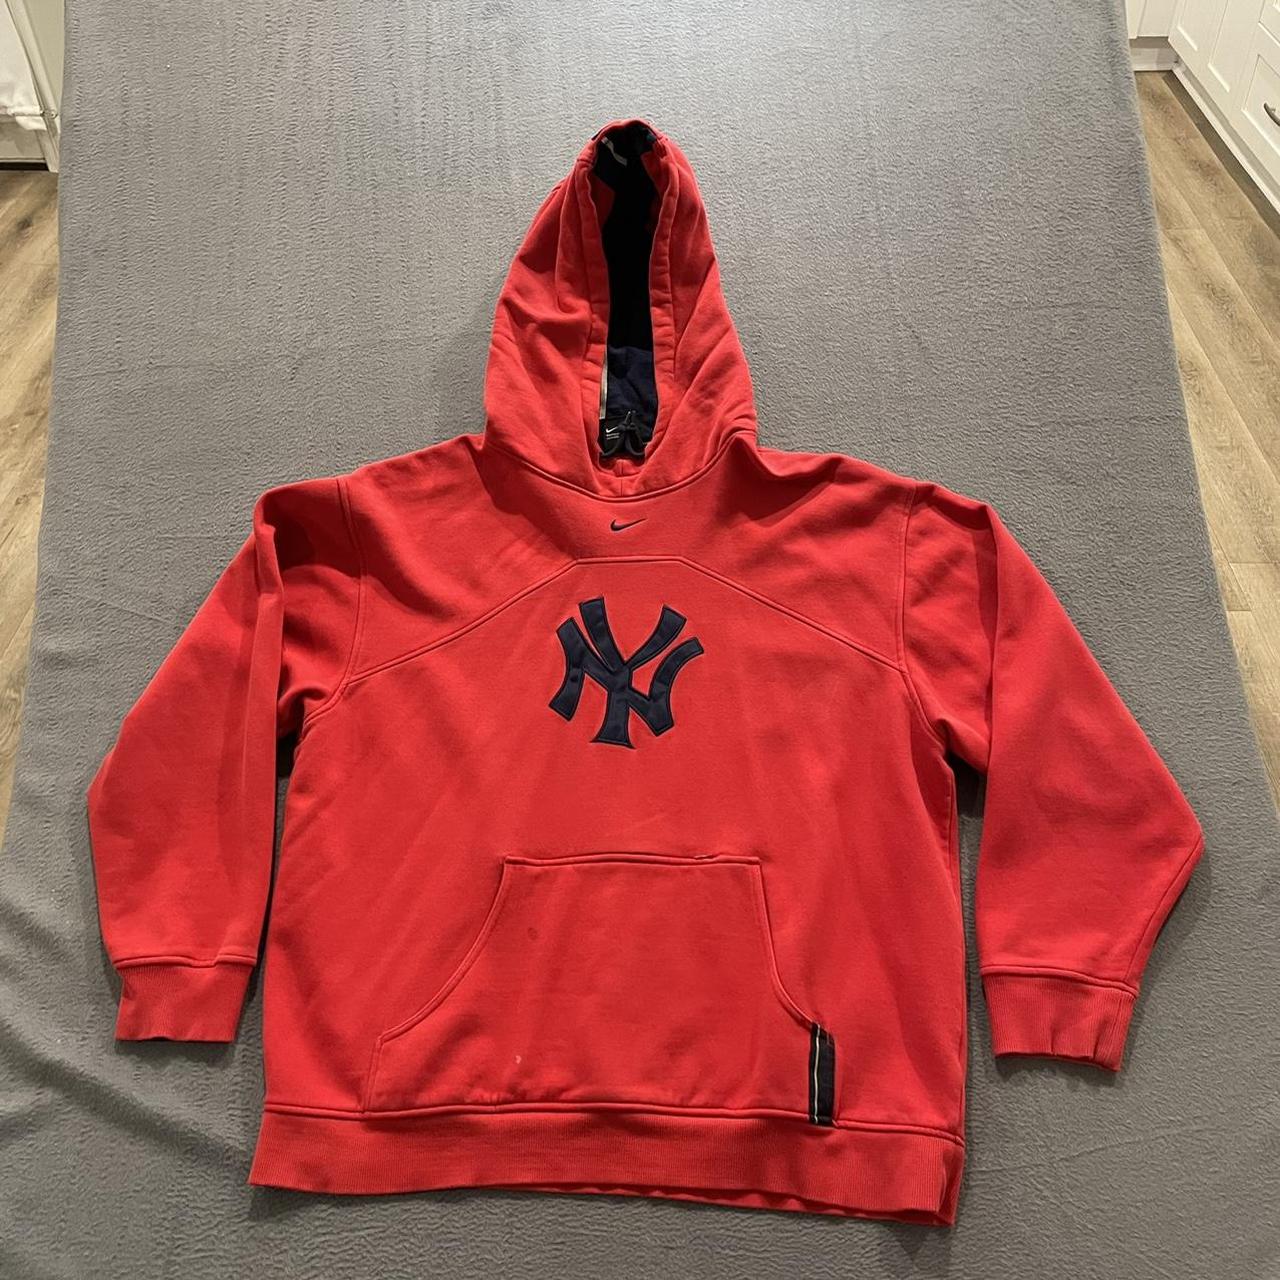 Vintage Nike New York Yankees Hoodie Sweatshirt